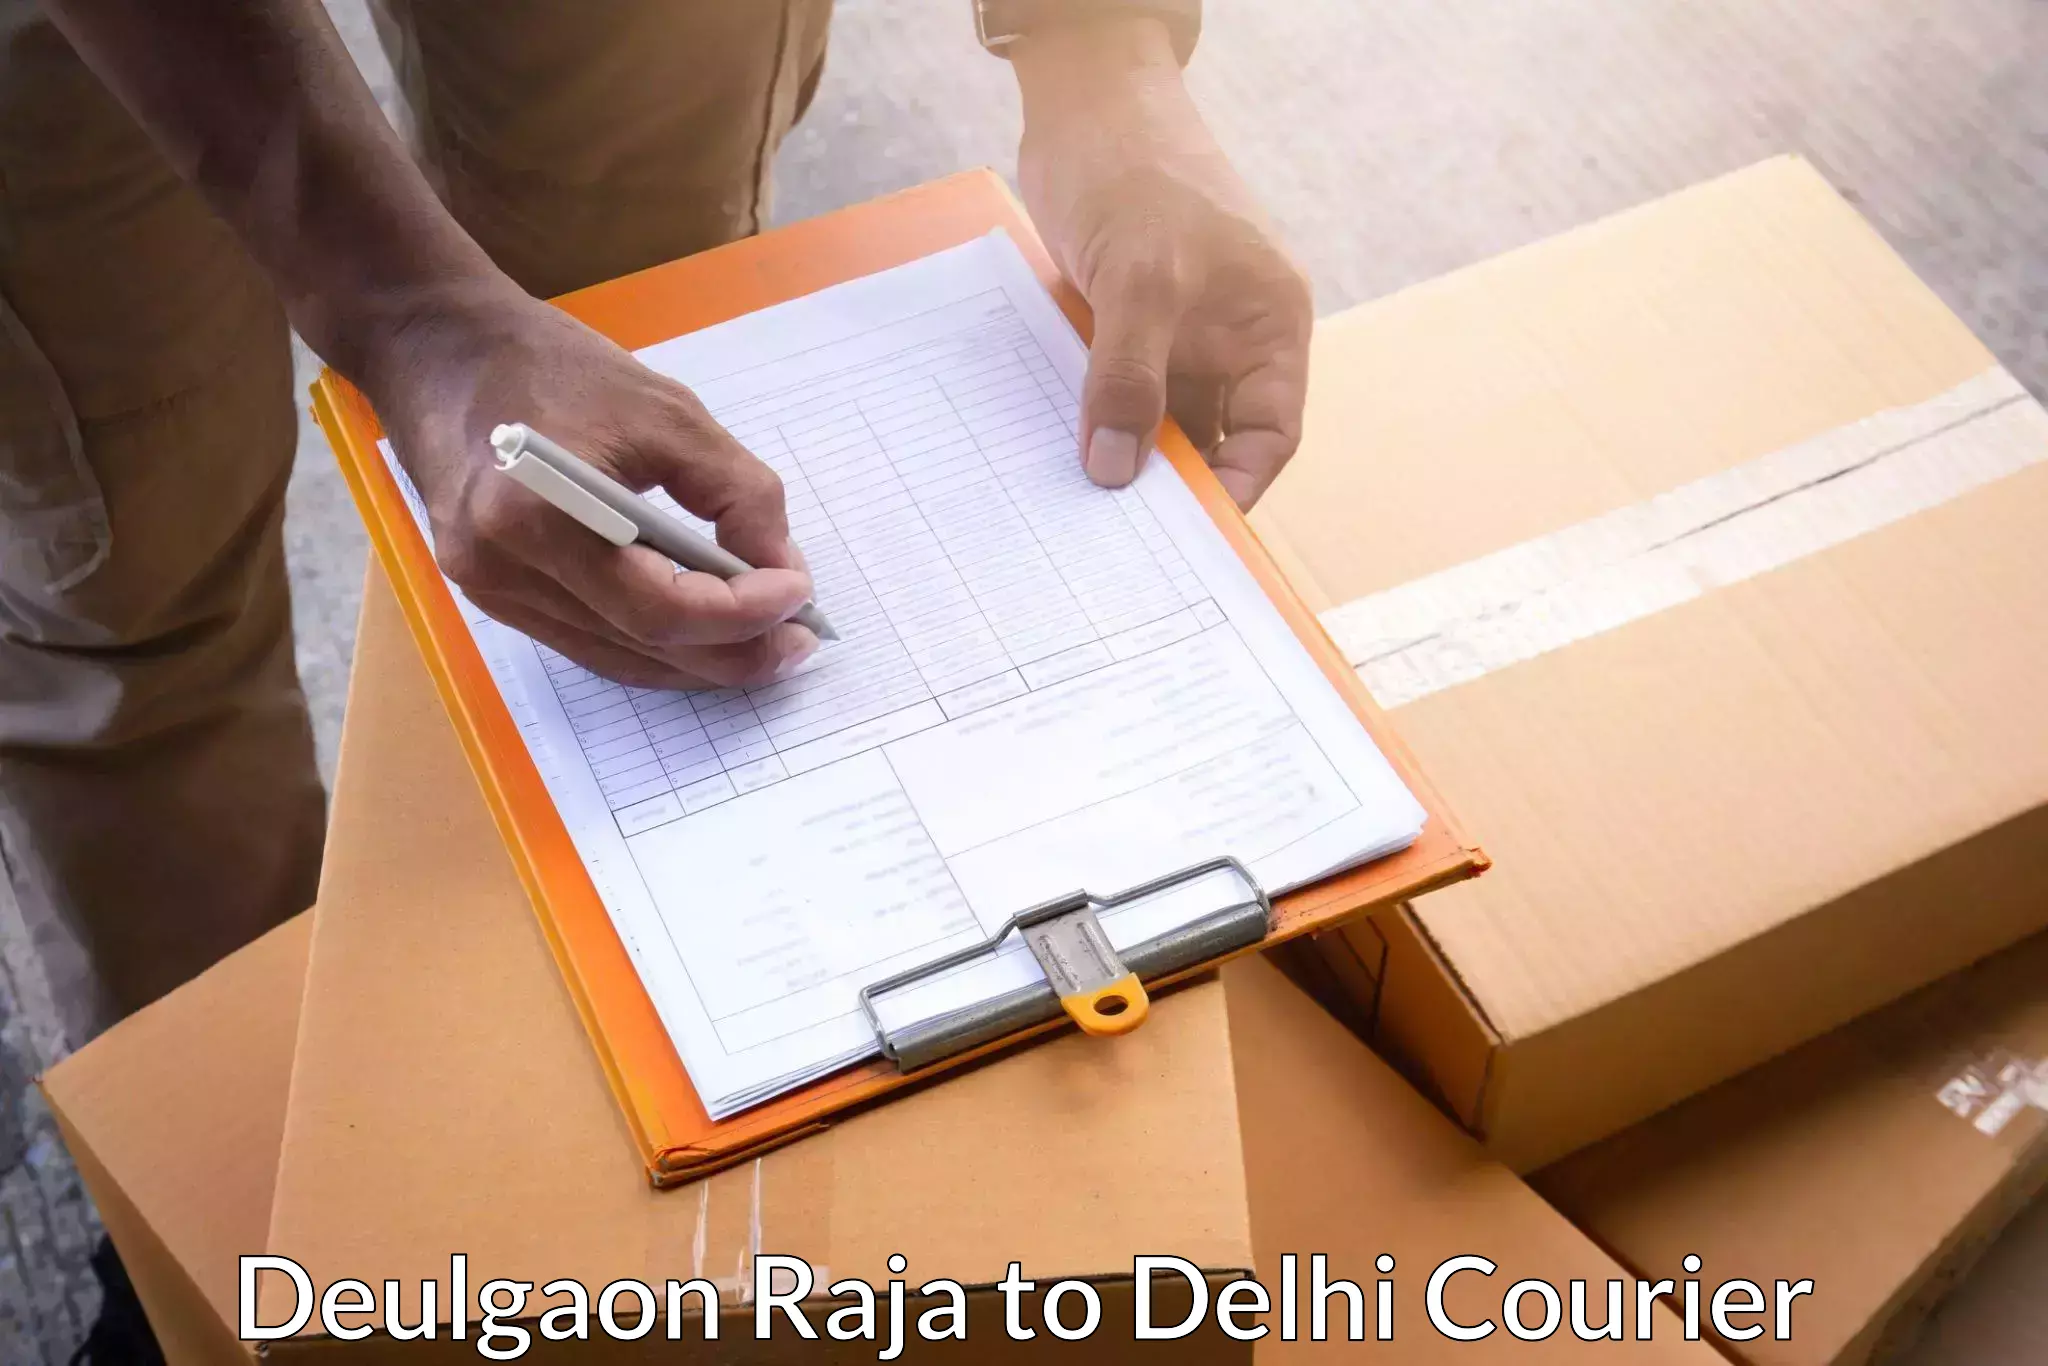 Customer-centric shipping Deulgaon Raja to Delhi